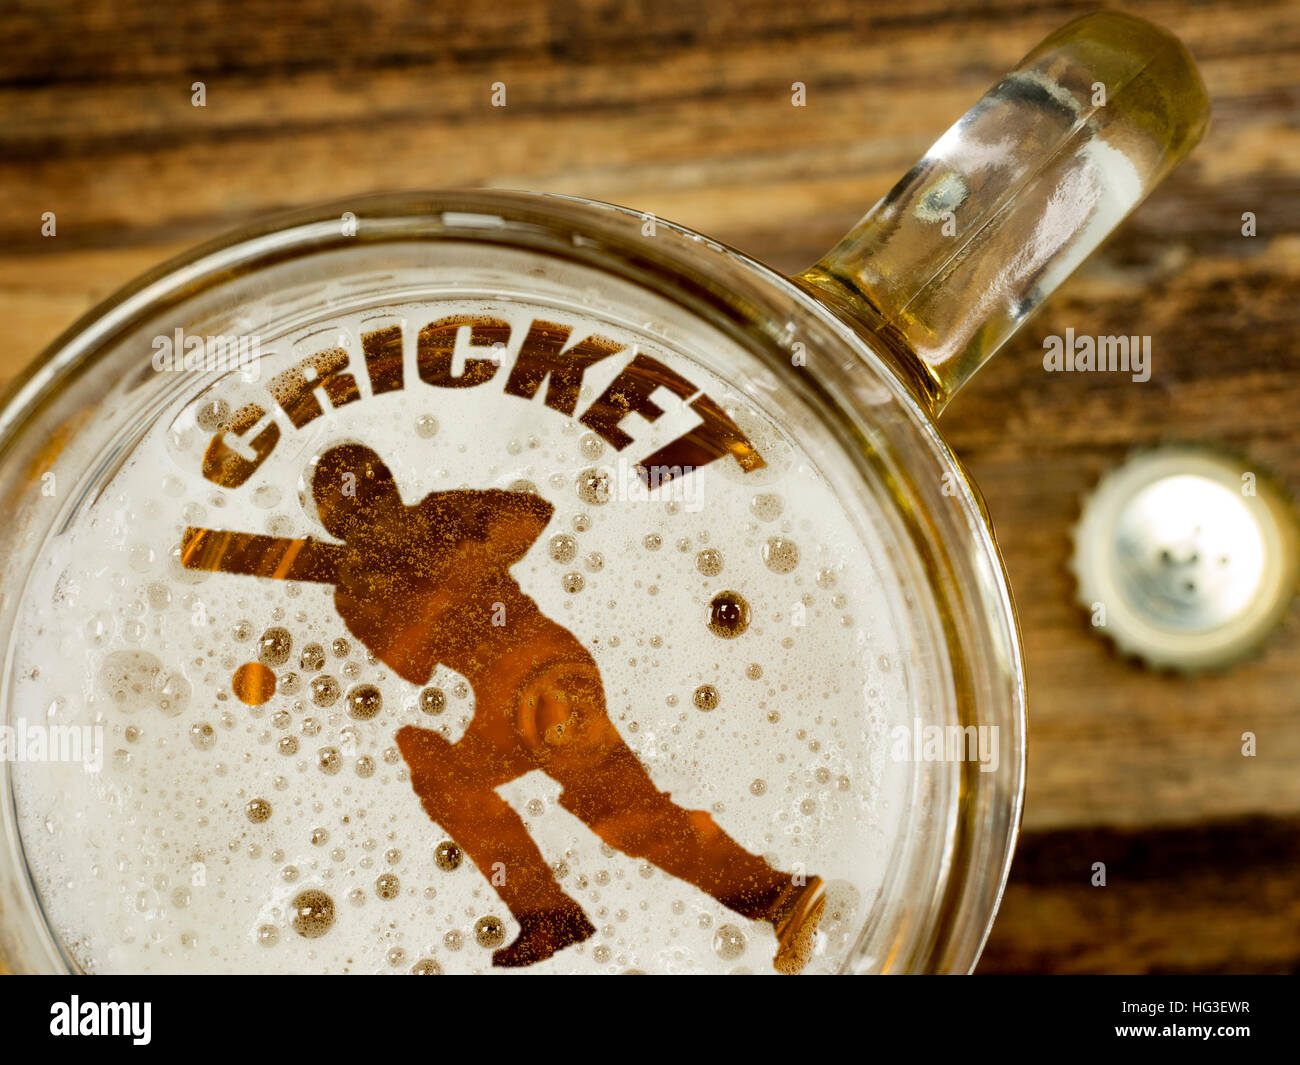 Cricket player in beer foam Stock Photo